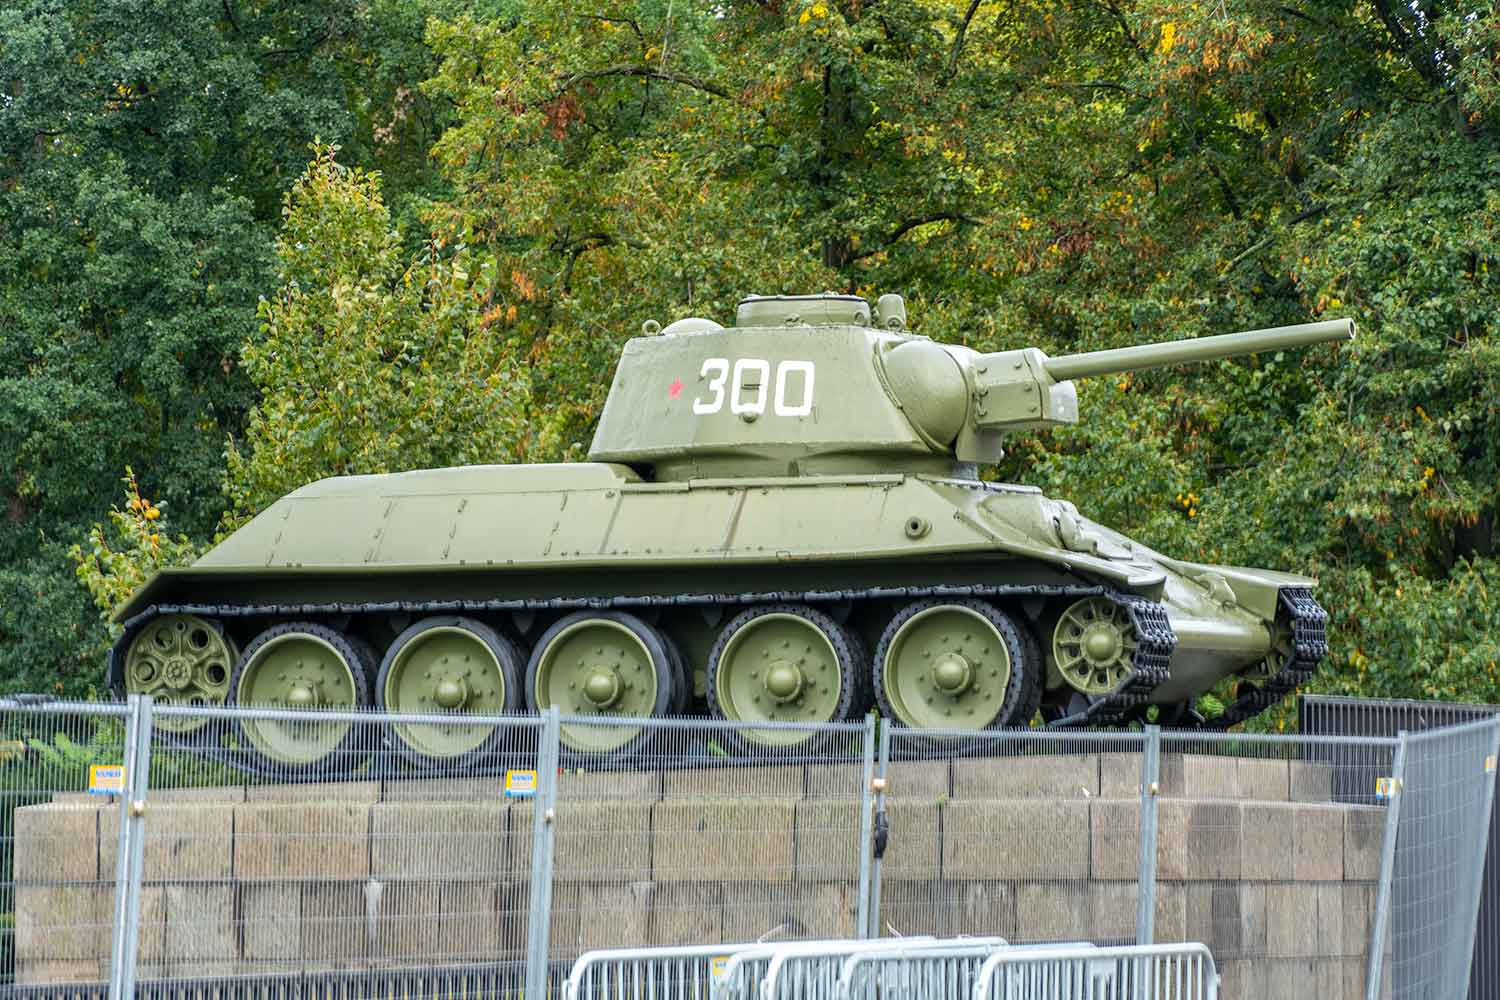 Soviet War Memorial Tank, Tiergarten, Berlin, Germany